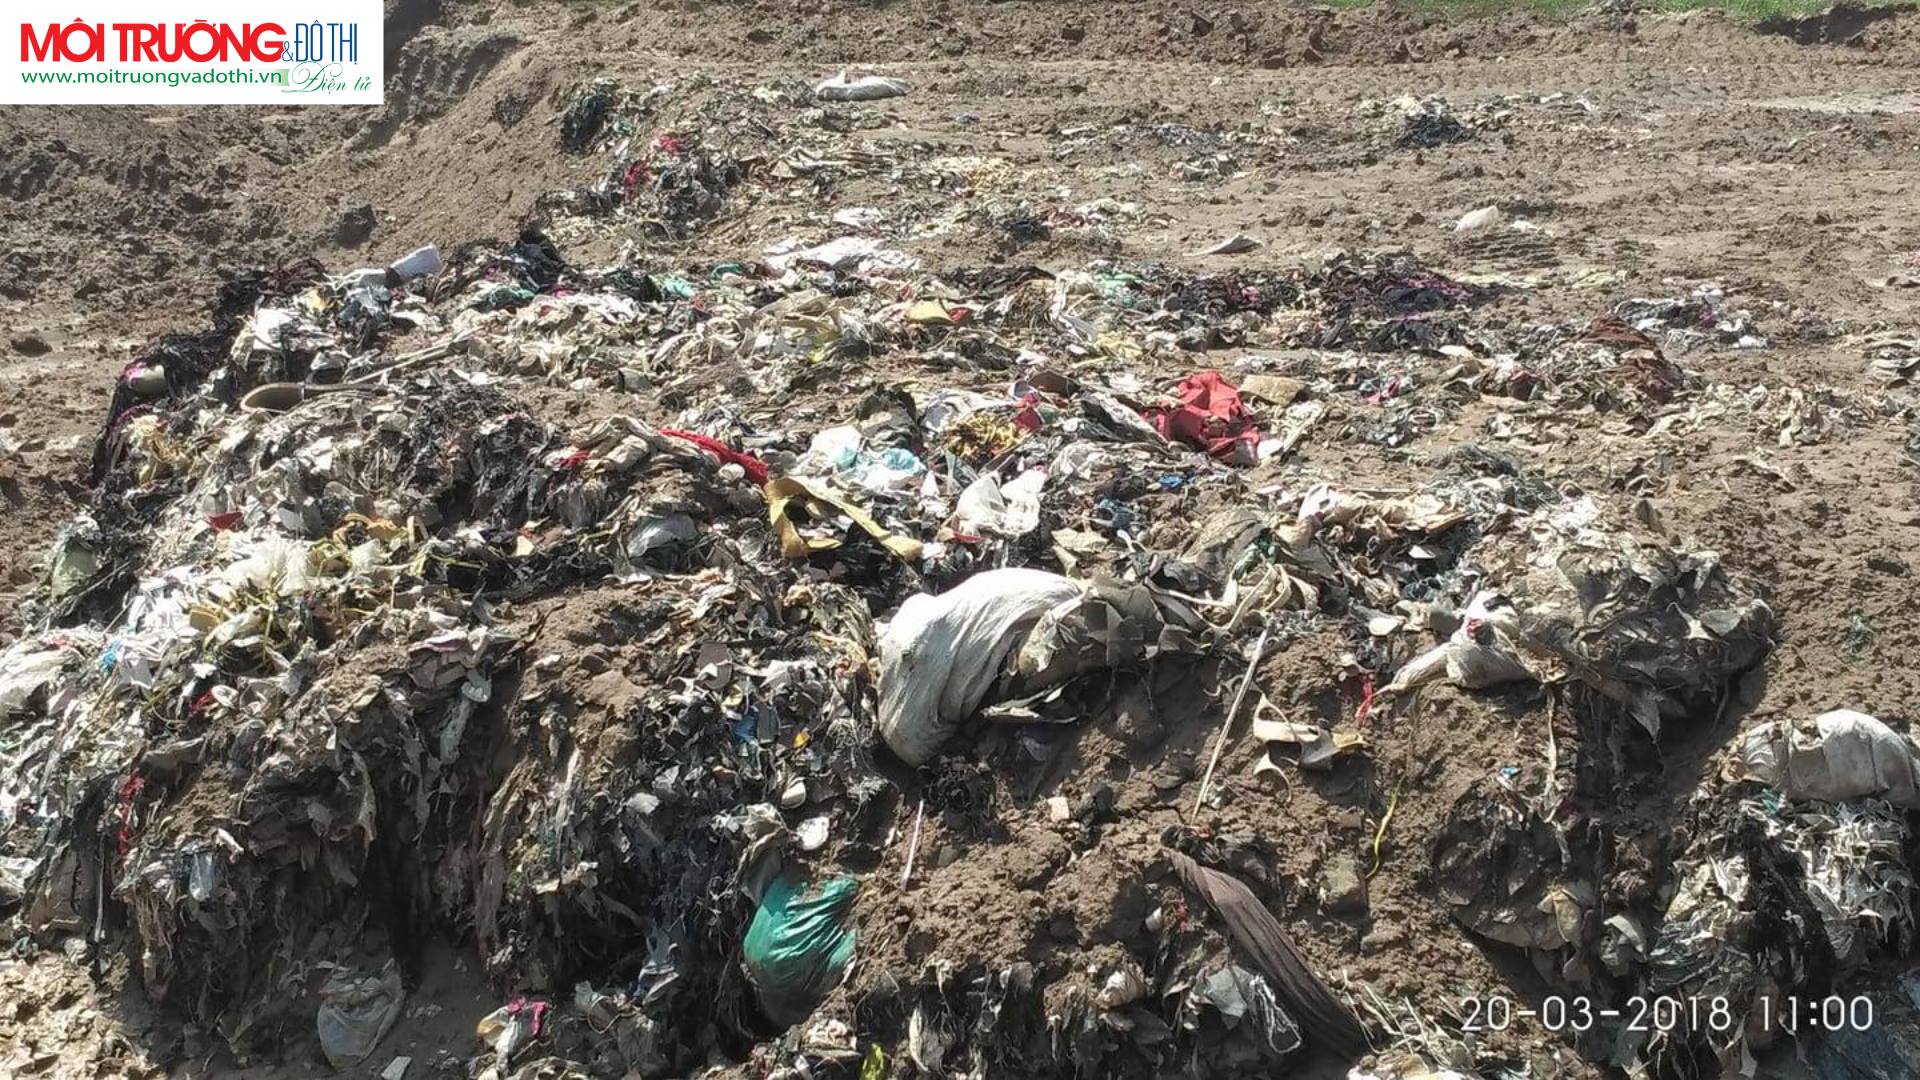 Tiếp vụ đổ trộm rác thải ở Hải Dương: Xã vẫn chờ chỉ đạo từ huyện!